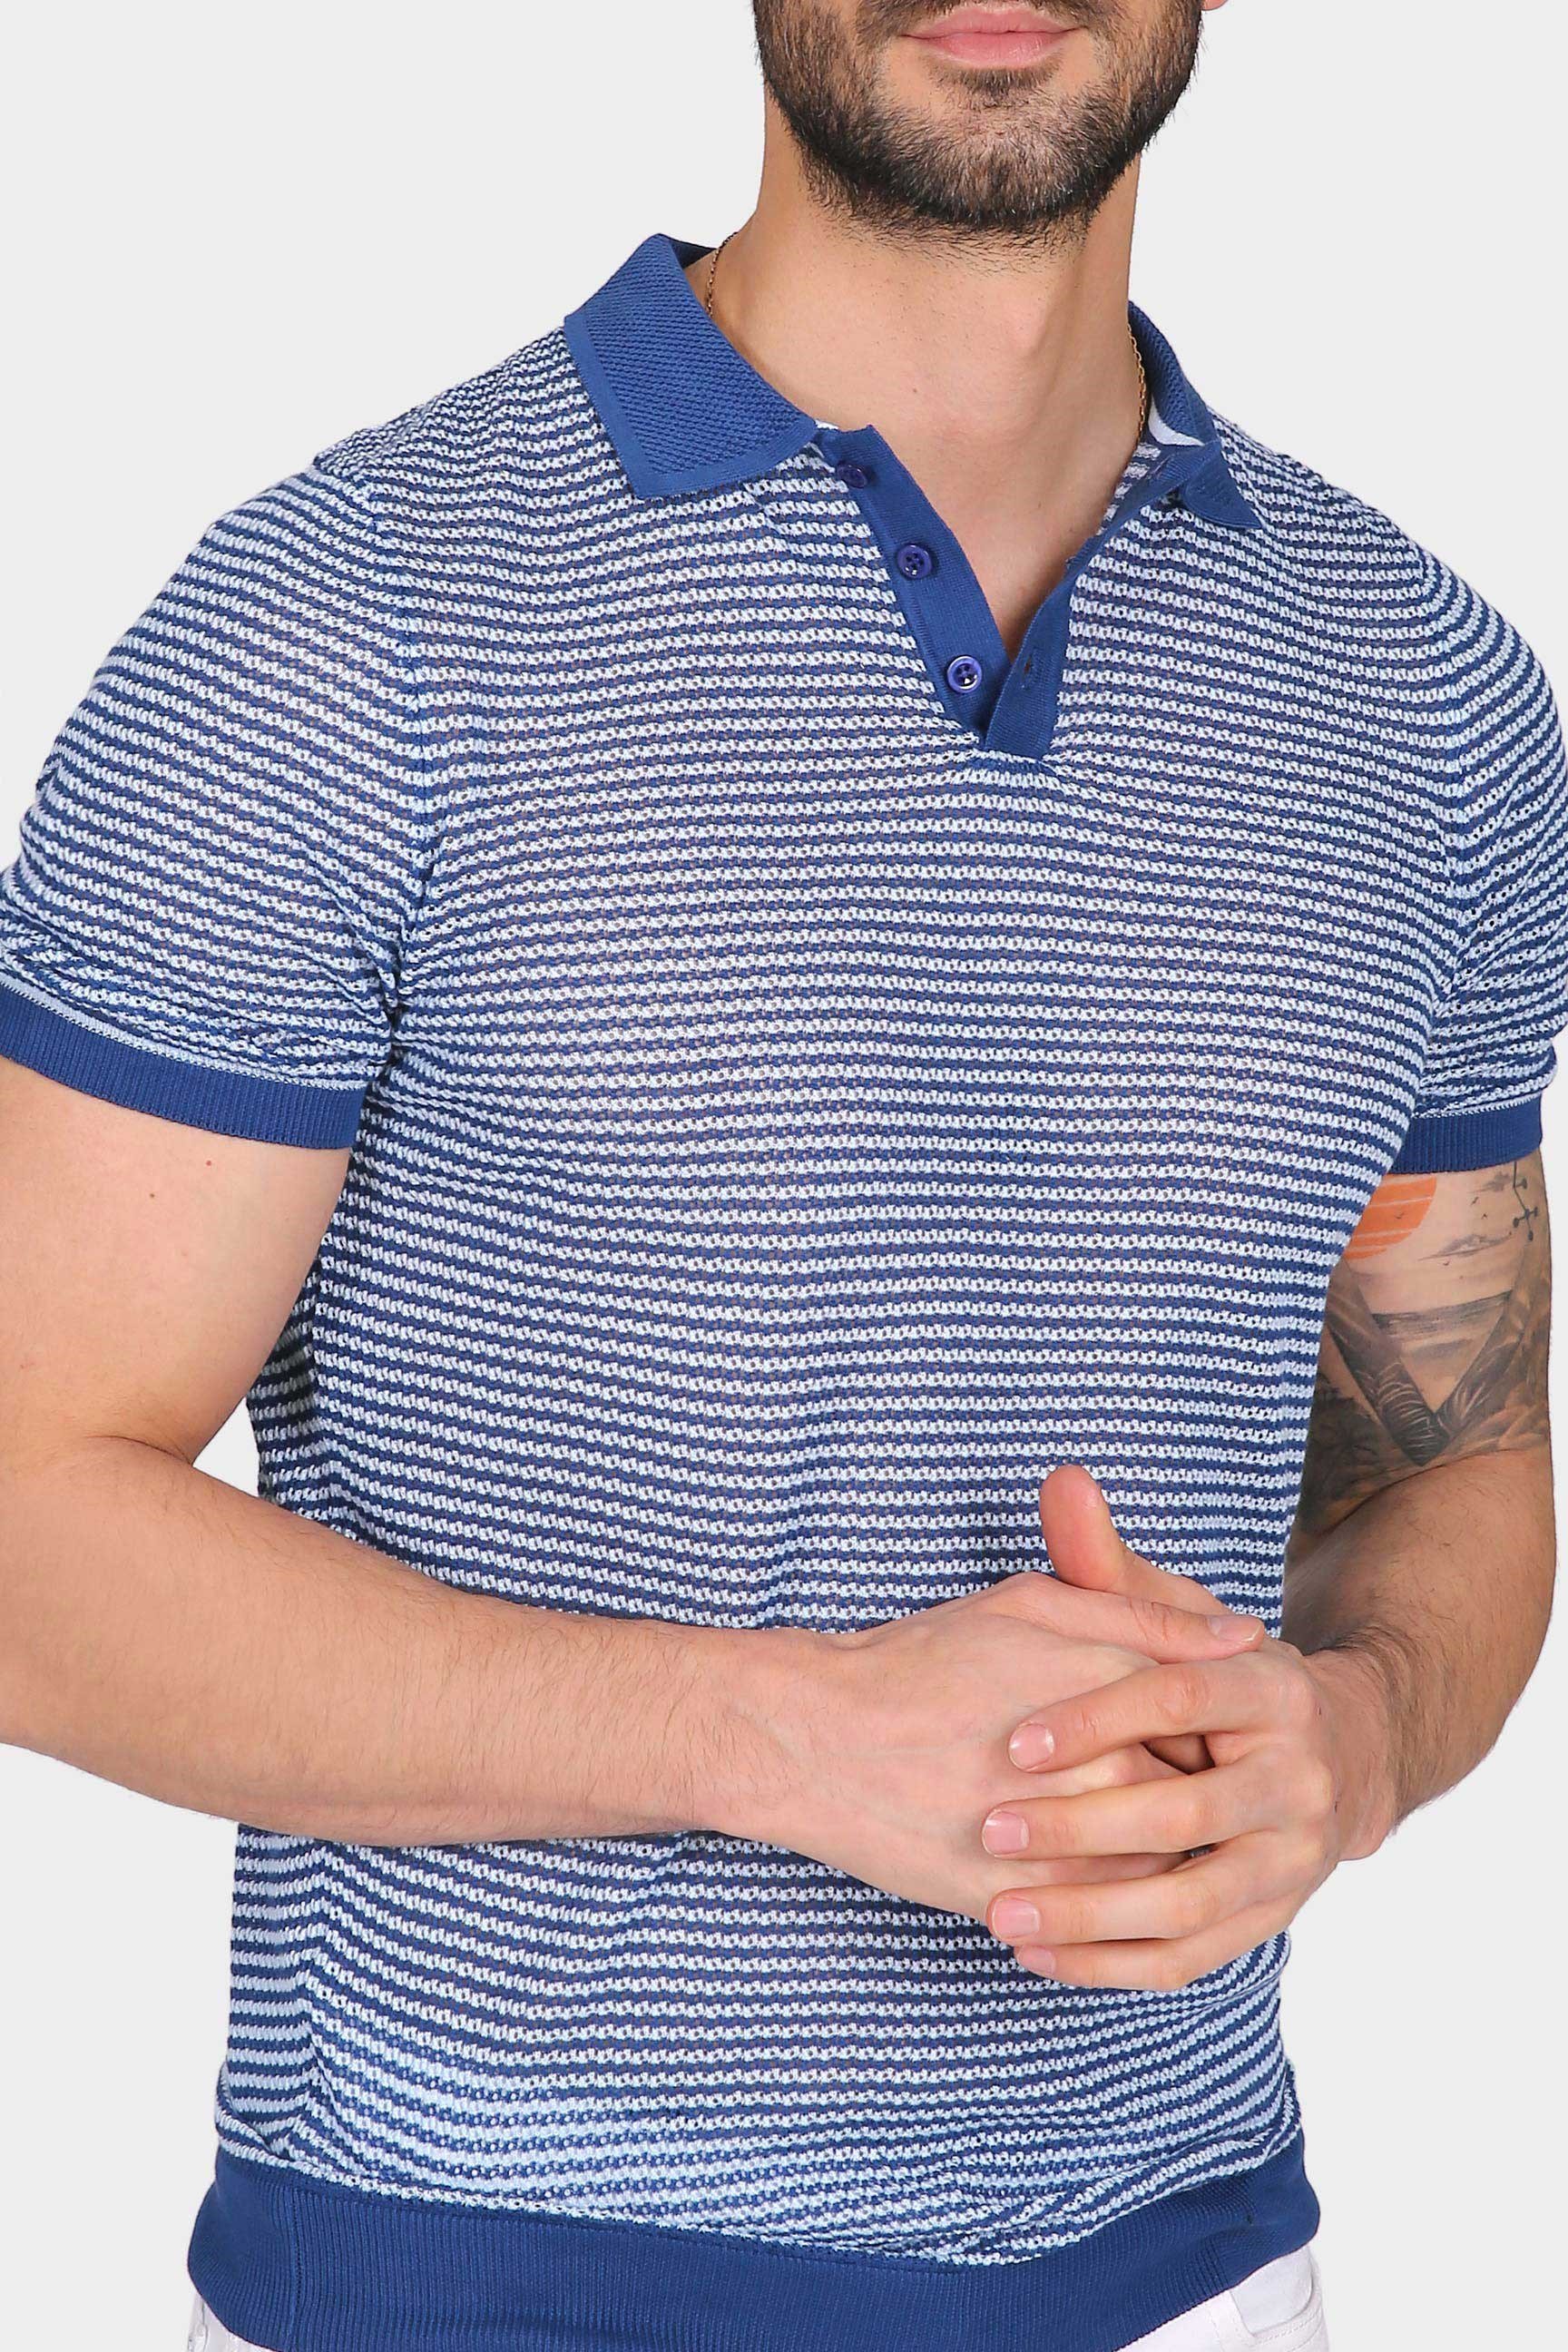 Ferraro Erkek Beyaz Çizgili Delikli Polo Yaka Düğmeli Triko T Shirt - Saks  Mavi | Erkek Giyim | modaferraro.com.tr